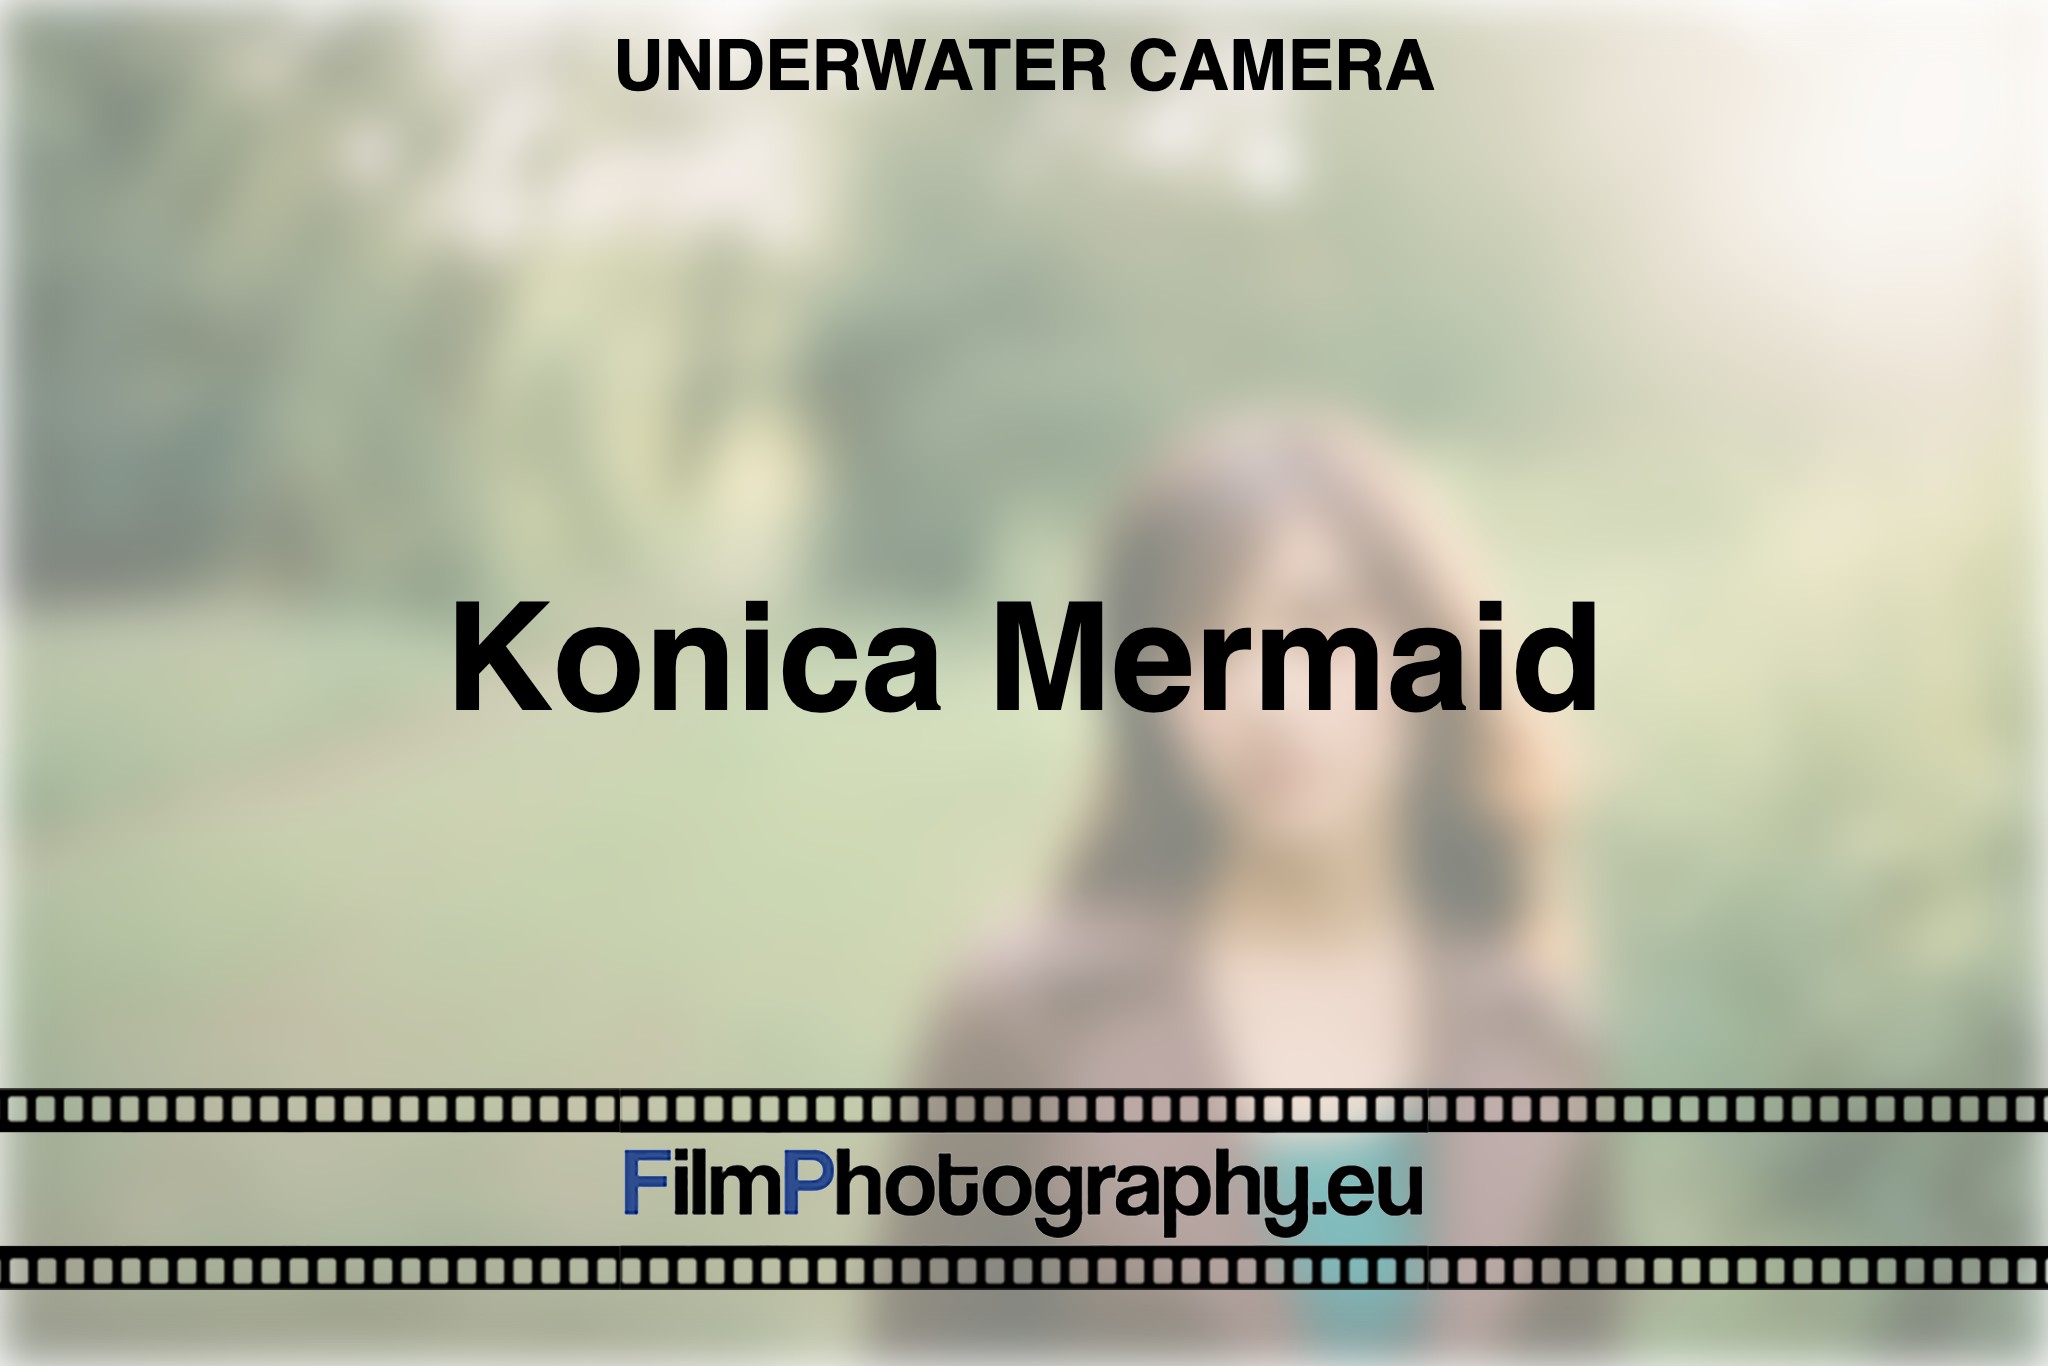 konica-mermaid-underwater-camera-bnv